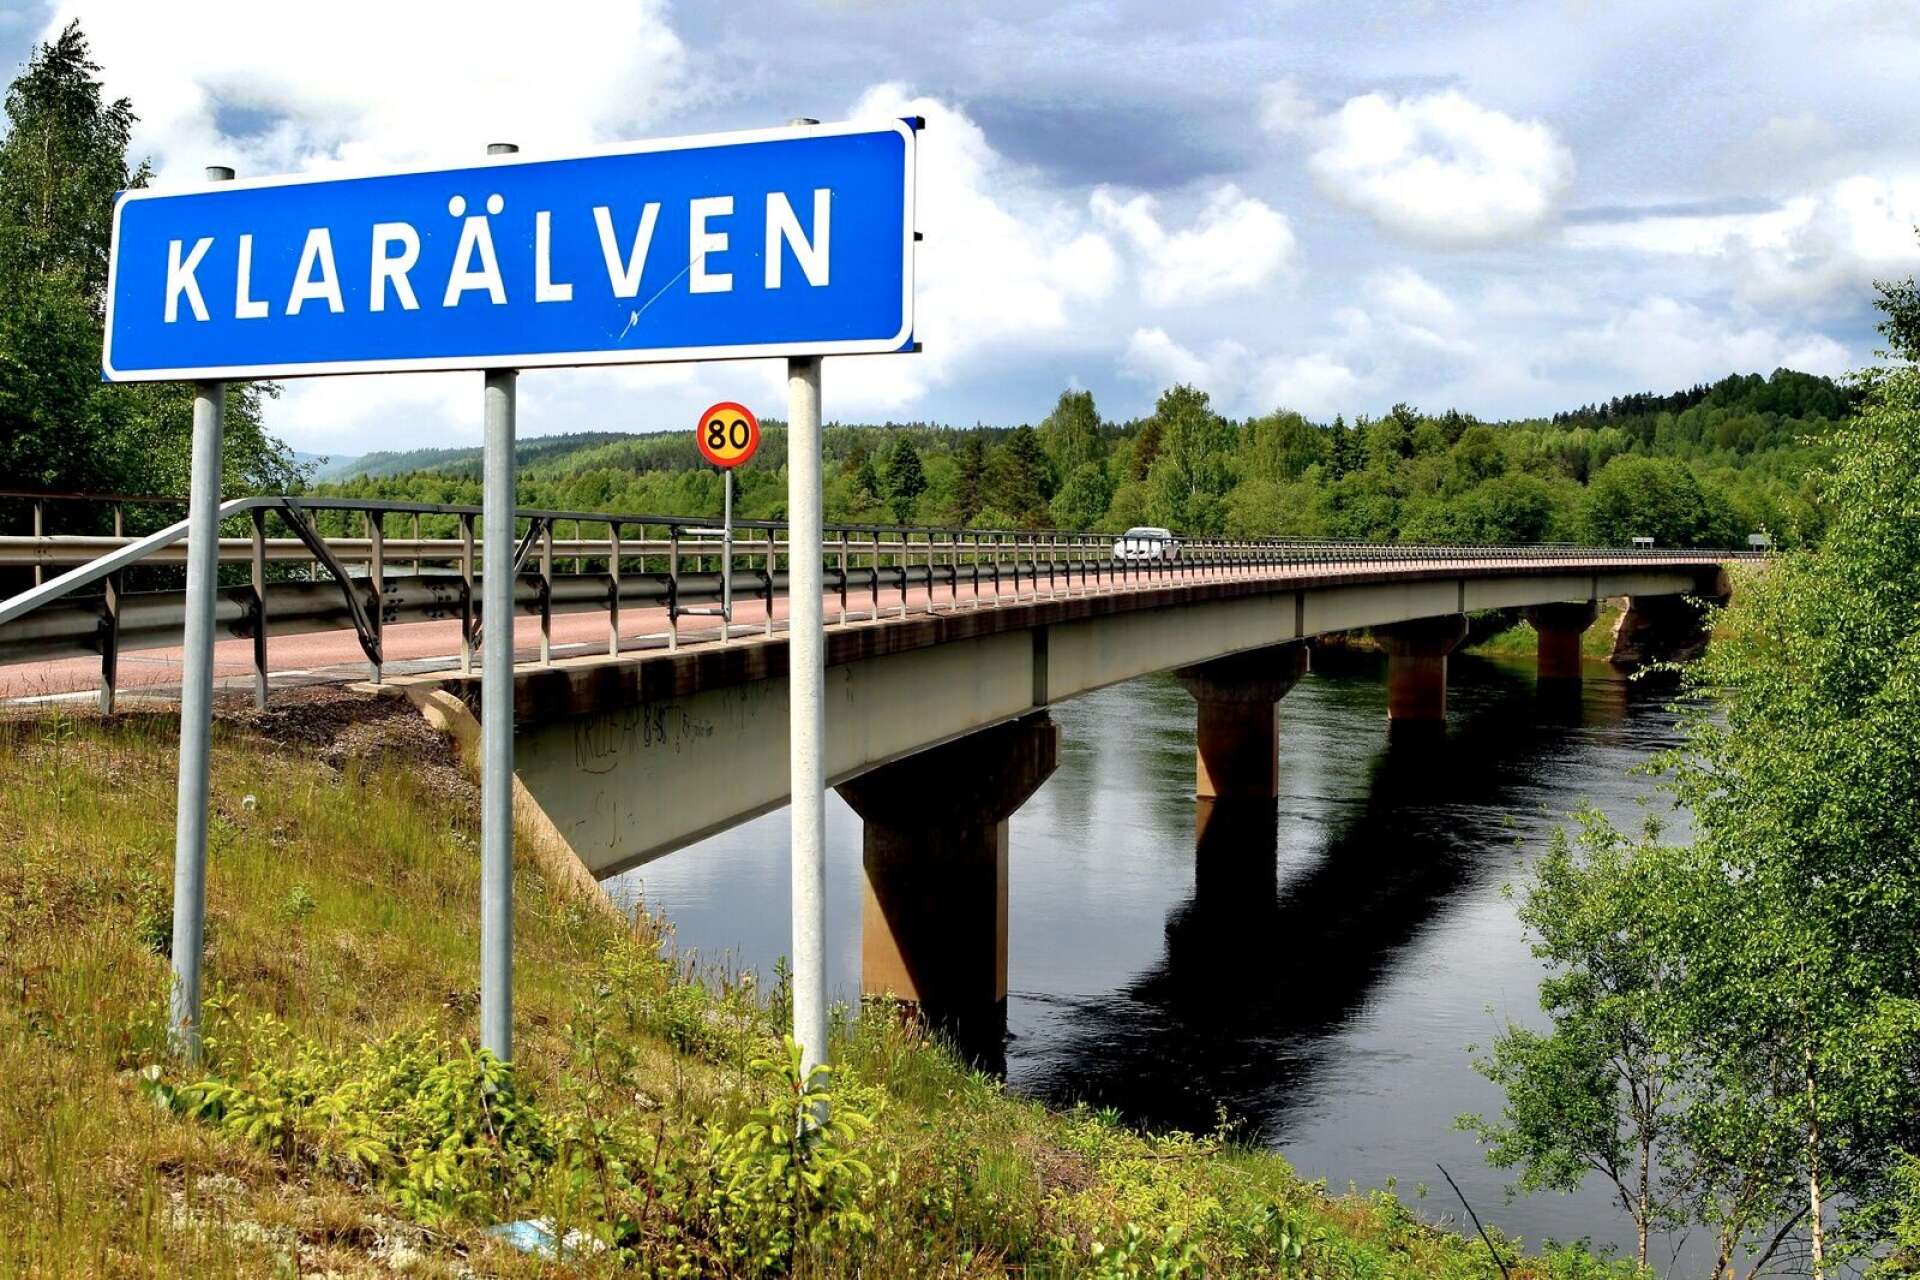 Vattennivåerna i bland annat Klarälven och Vänern har sjunkit den senaste tiden på grund av torrperioden.